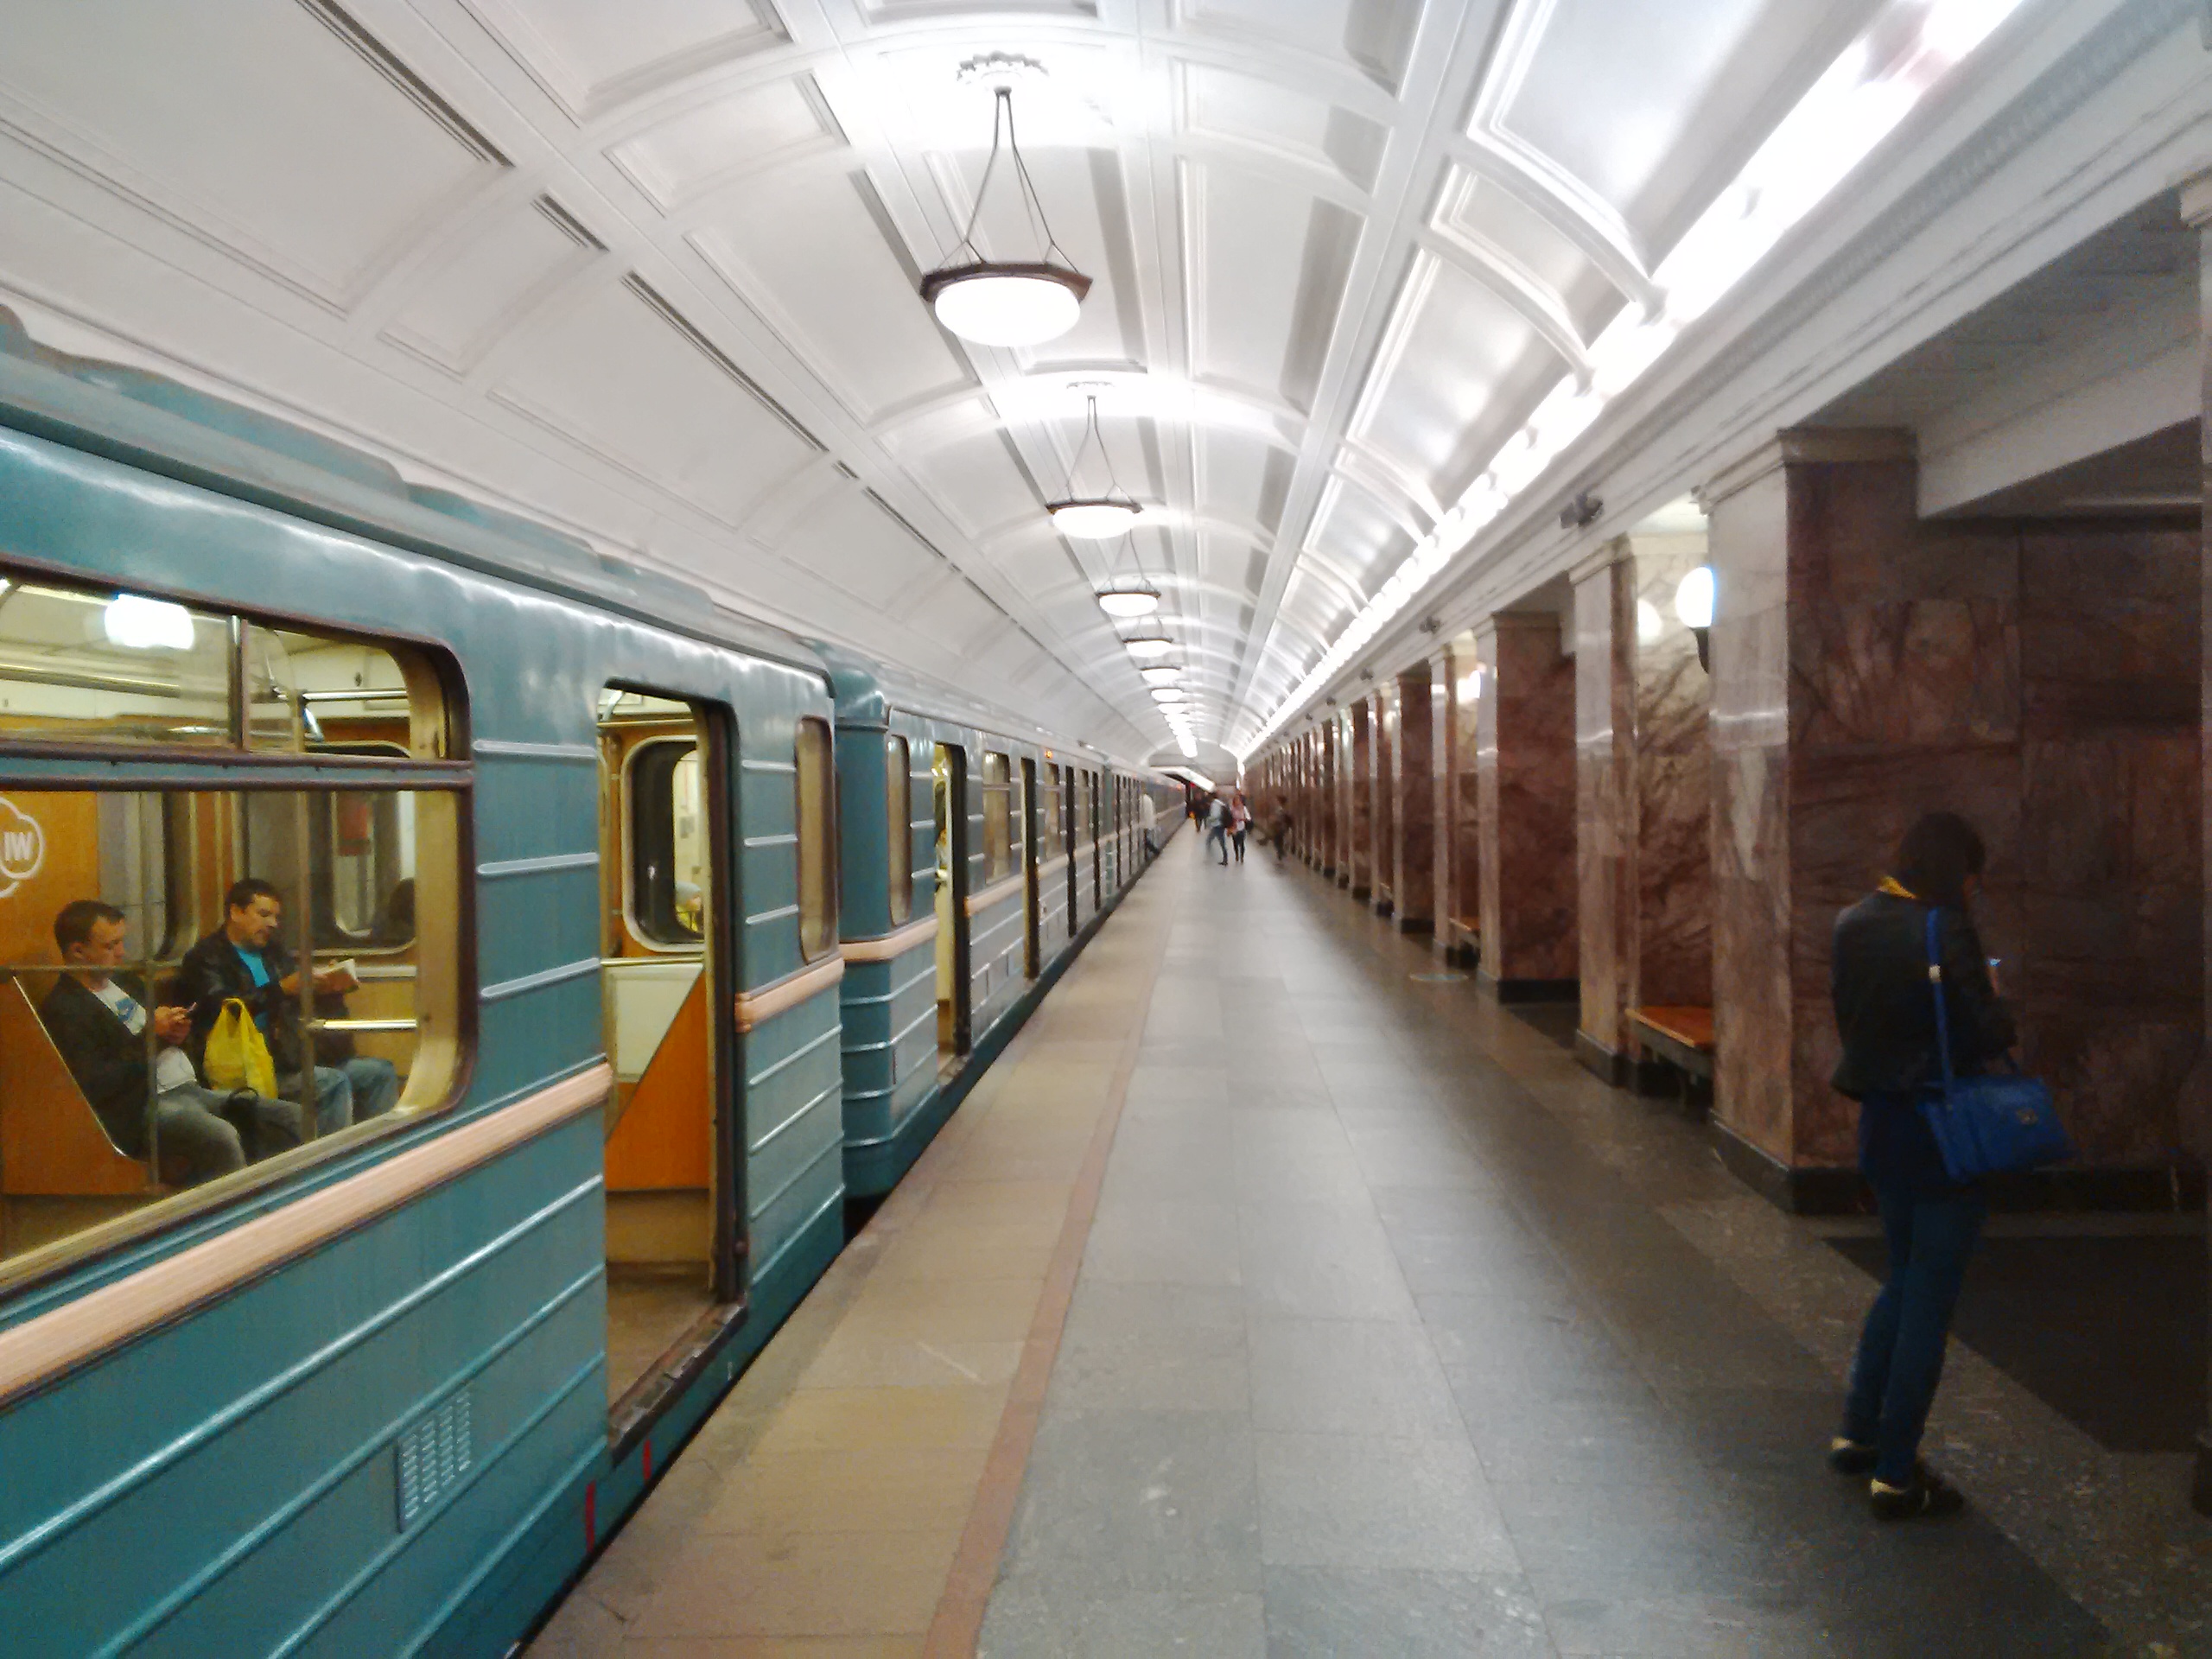 Widok stacji metra w Moskwie z niebieskim wagonikiem kolejki, marmurową posadzką i żyrandolami